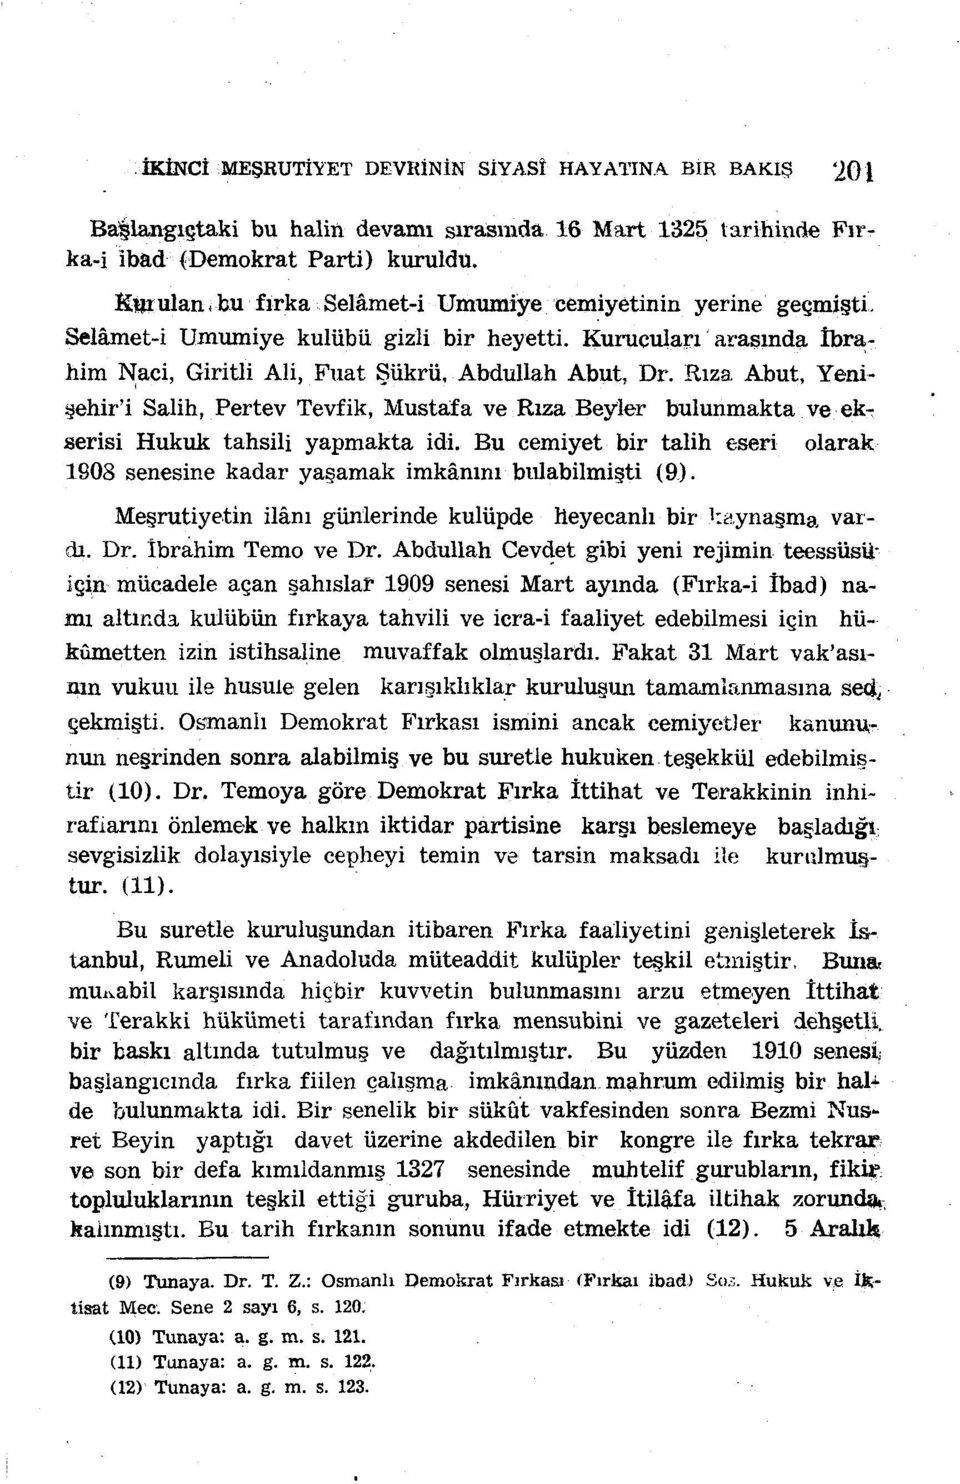 Rıza Abut, Yenişehir'i Salih, Pertev Tevfik, Mustafa ve Rıza Beyler bulunmakta ve ekr serisi Hukuk tahsili yapmakta idi.